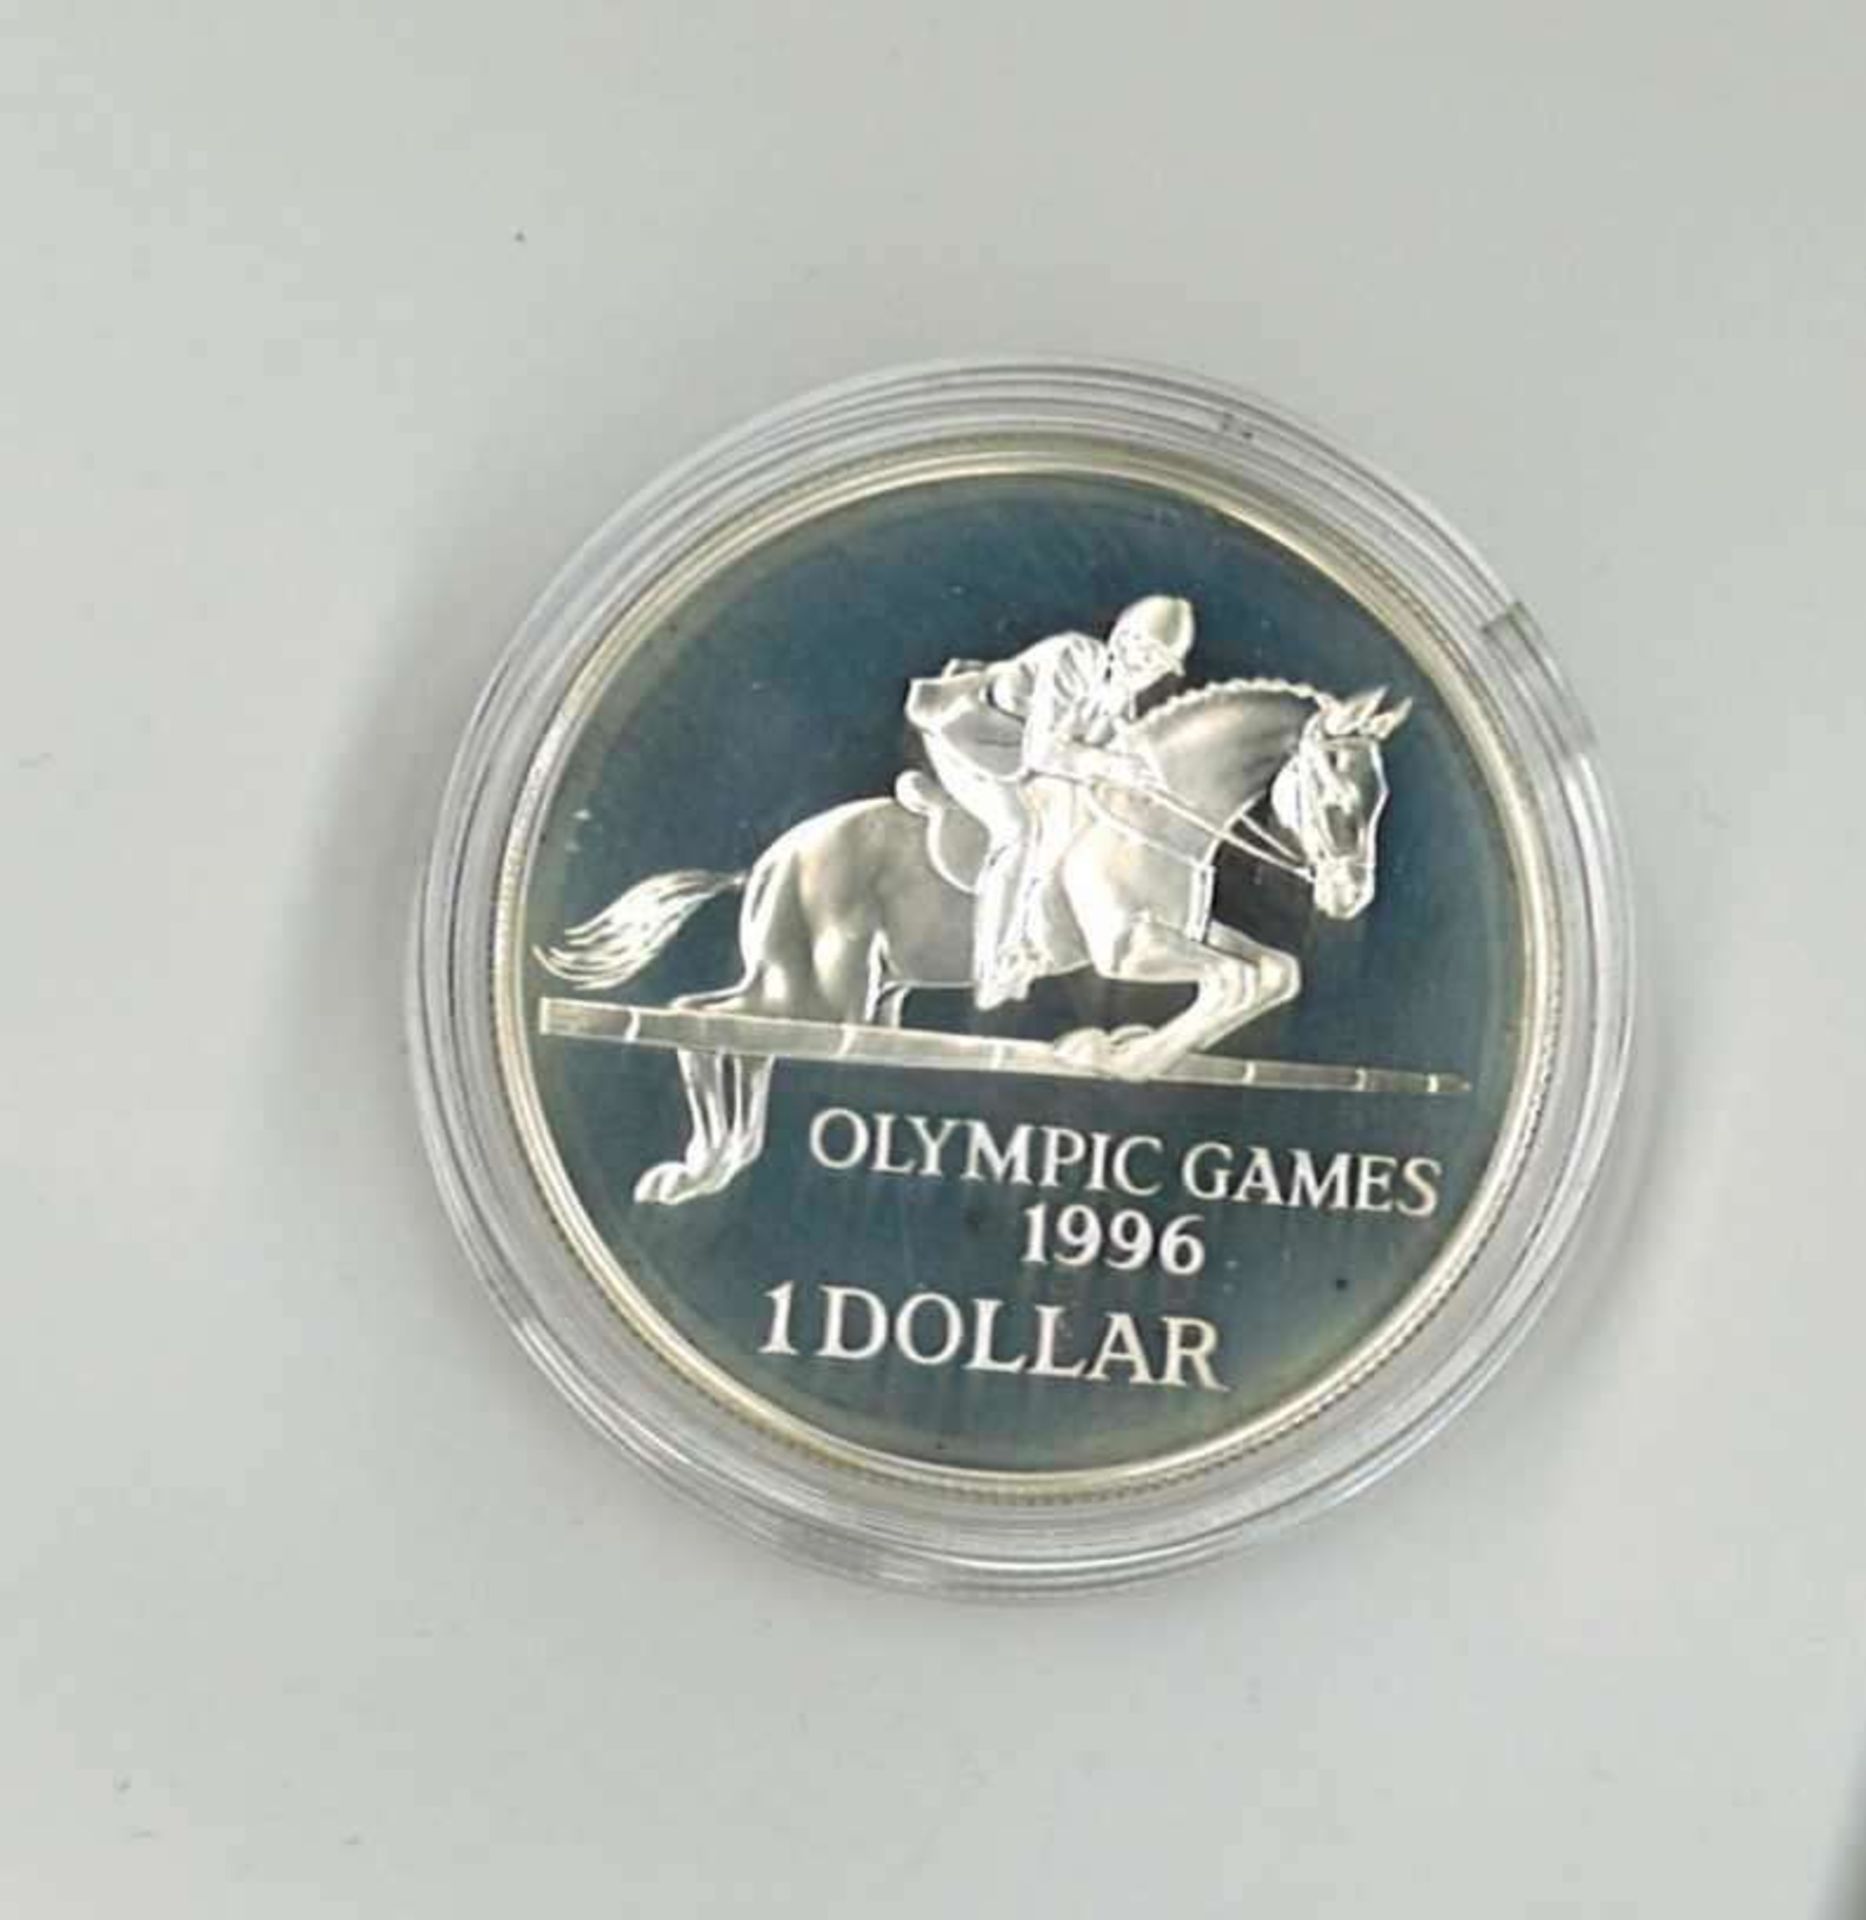 Olympische Spiele Bermudas, 1 Dollar, 925/1000 Silber.Springreiten. Mit Zertifikat.Olympic Games Be - Bild 2 aus 2